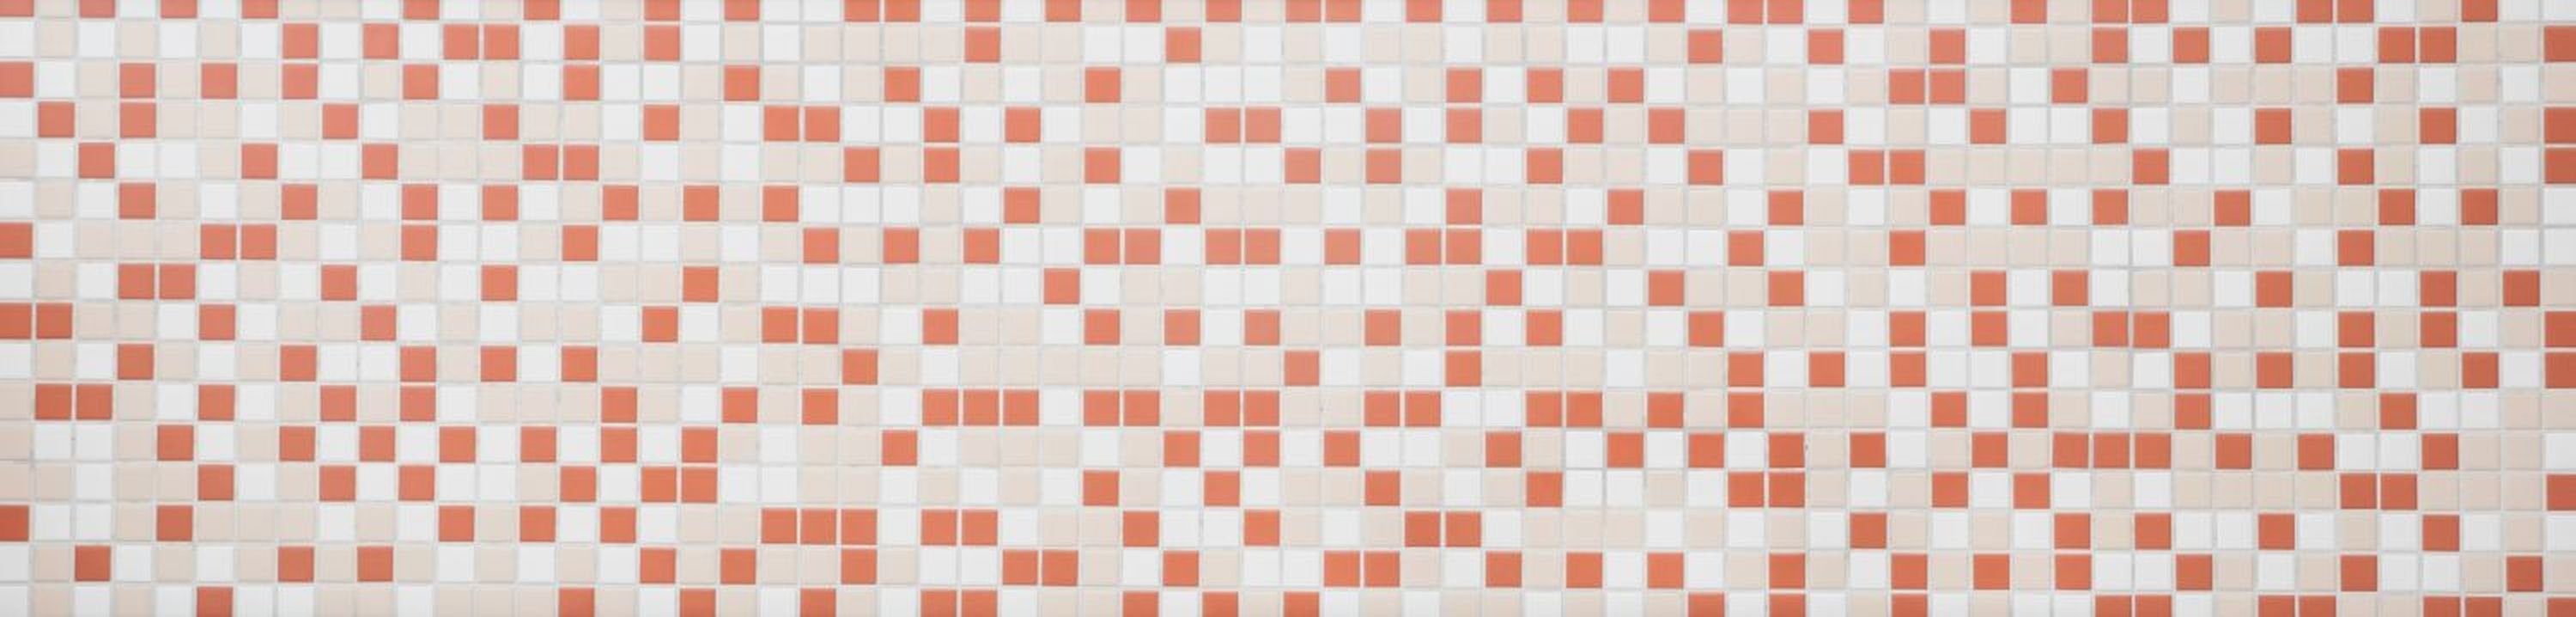 Mosani Mosaikfliesen creme terracotta weiß Küche Fliese matt Keramik Mosaik Fliesenspiegel